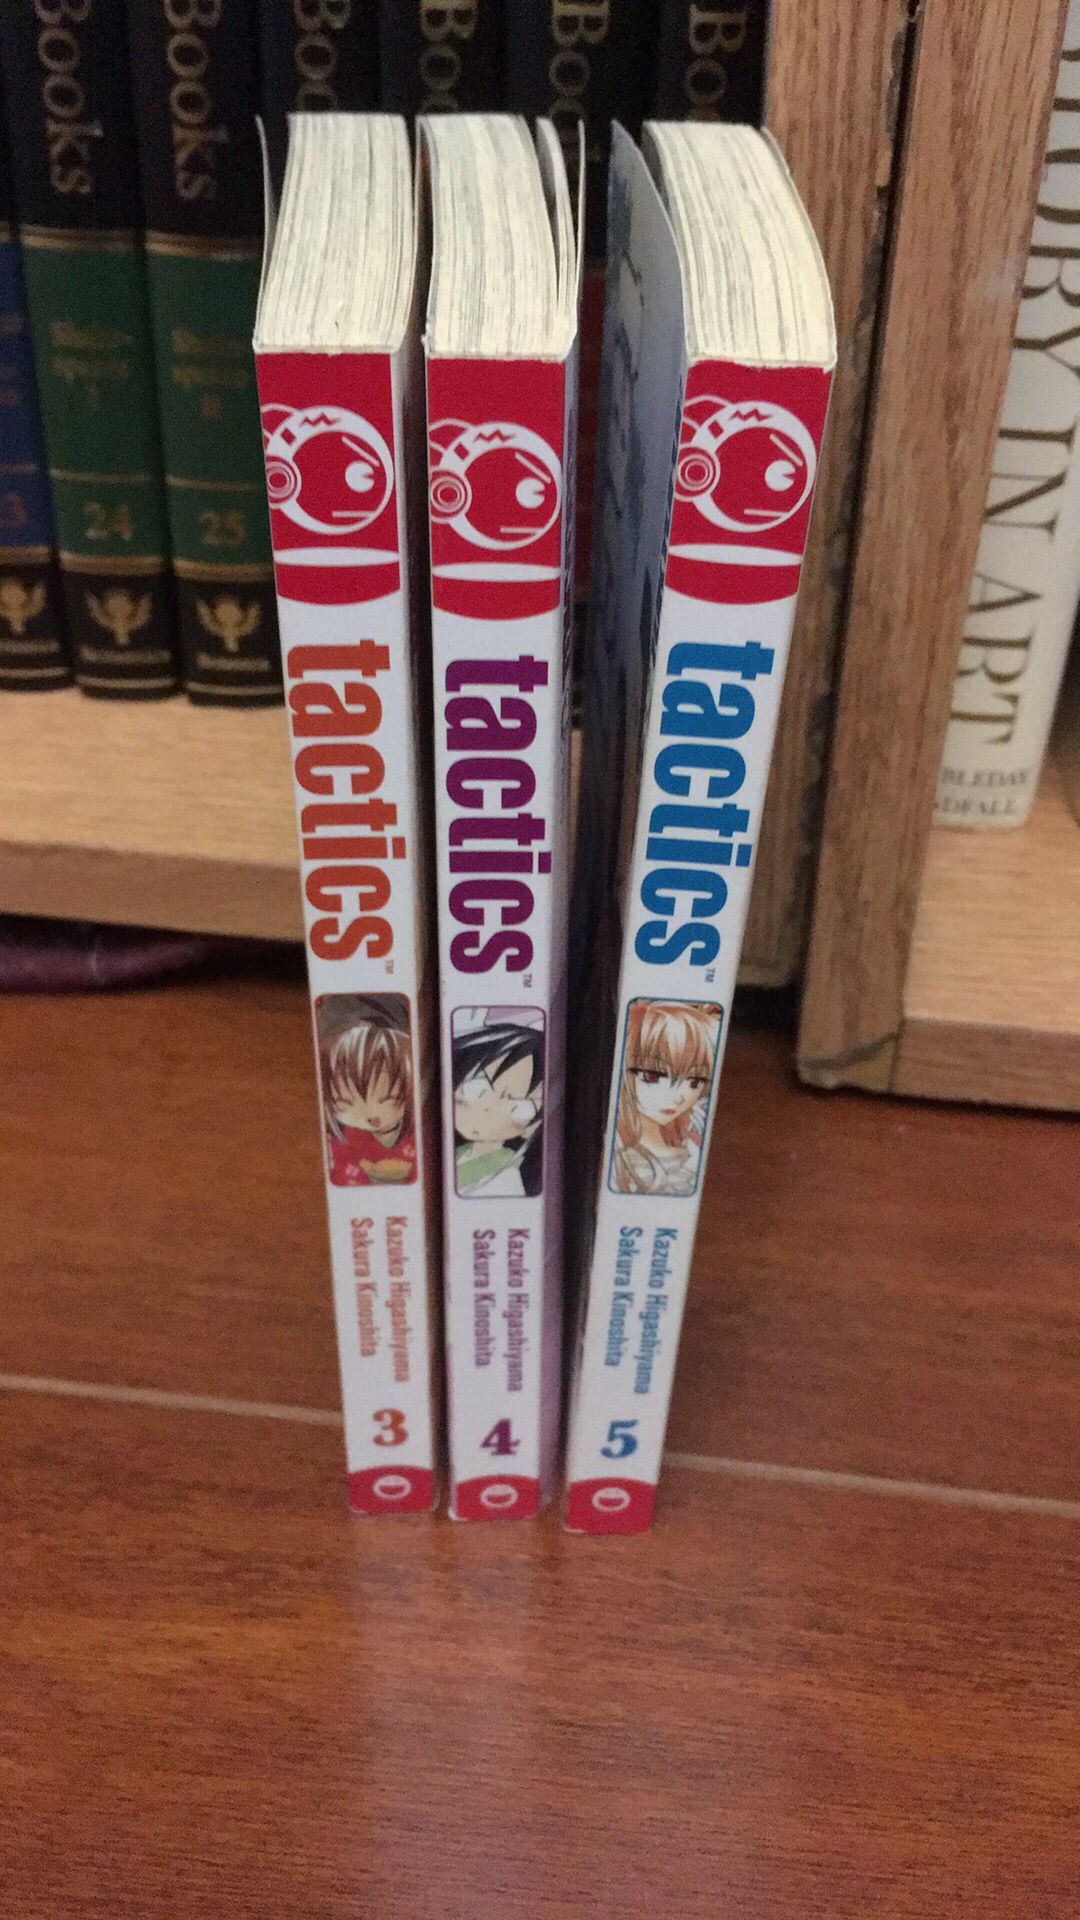 Tactics manga 3-5